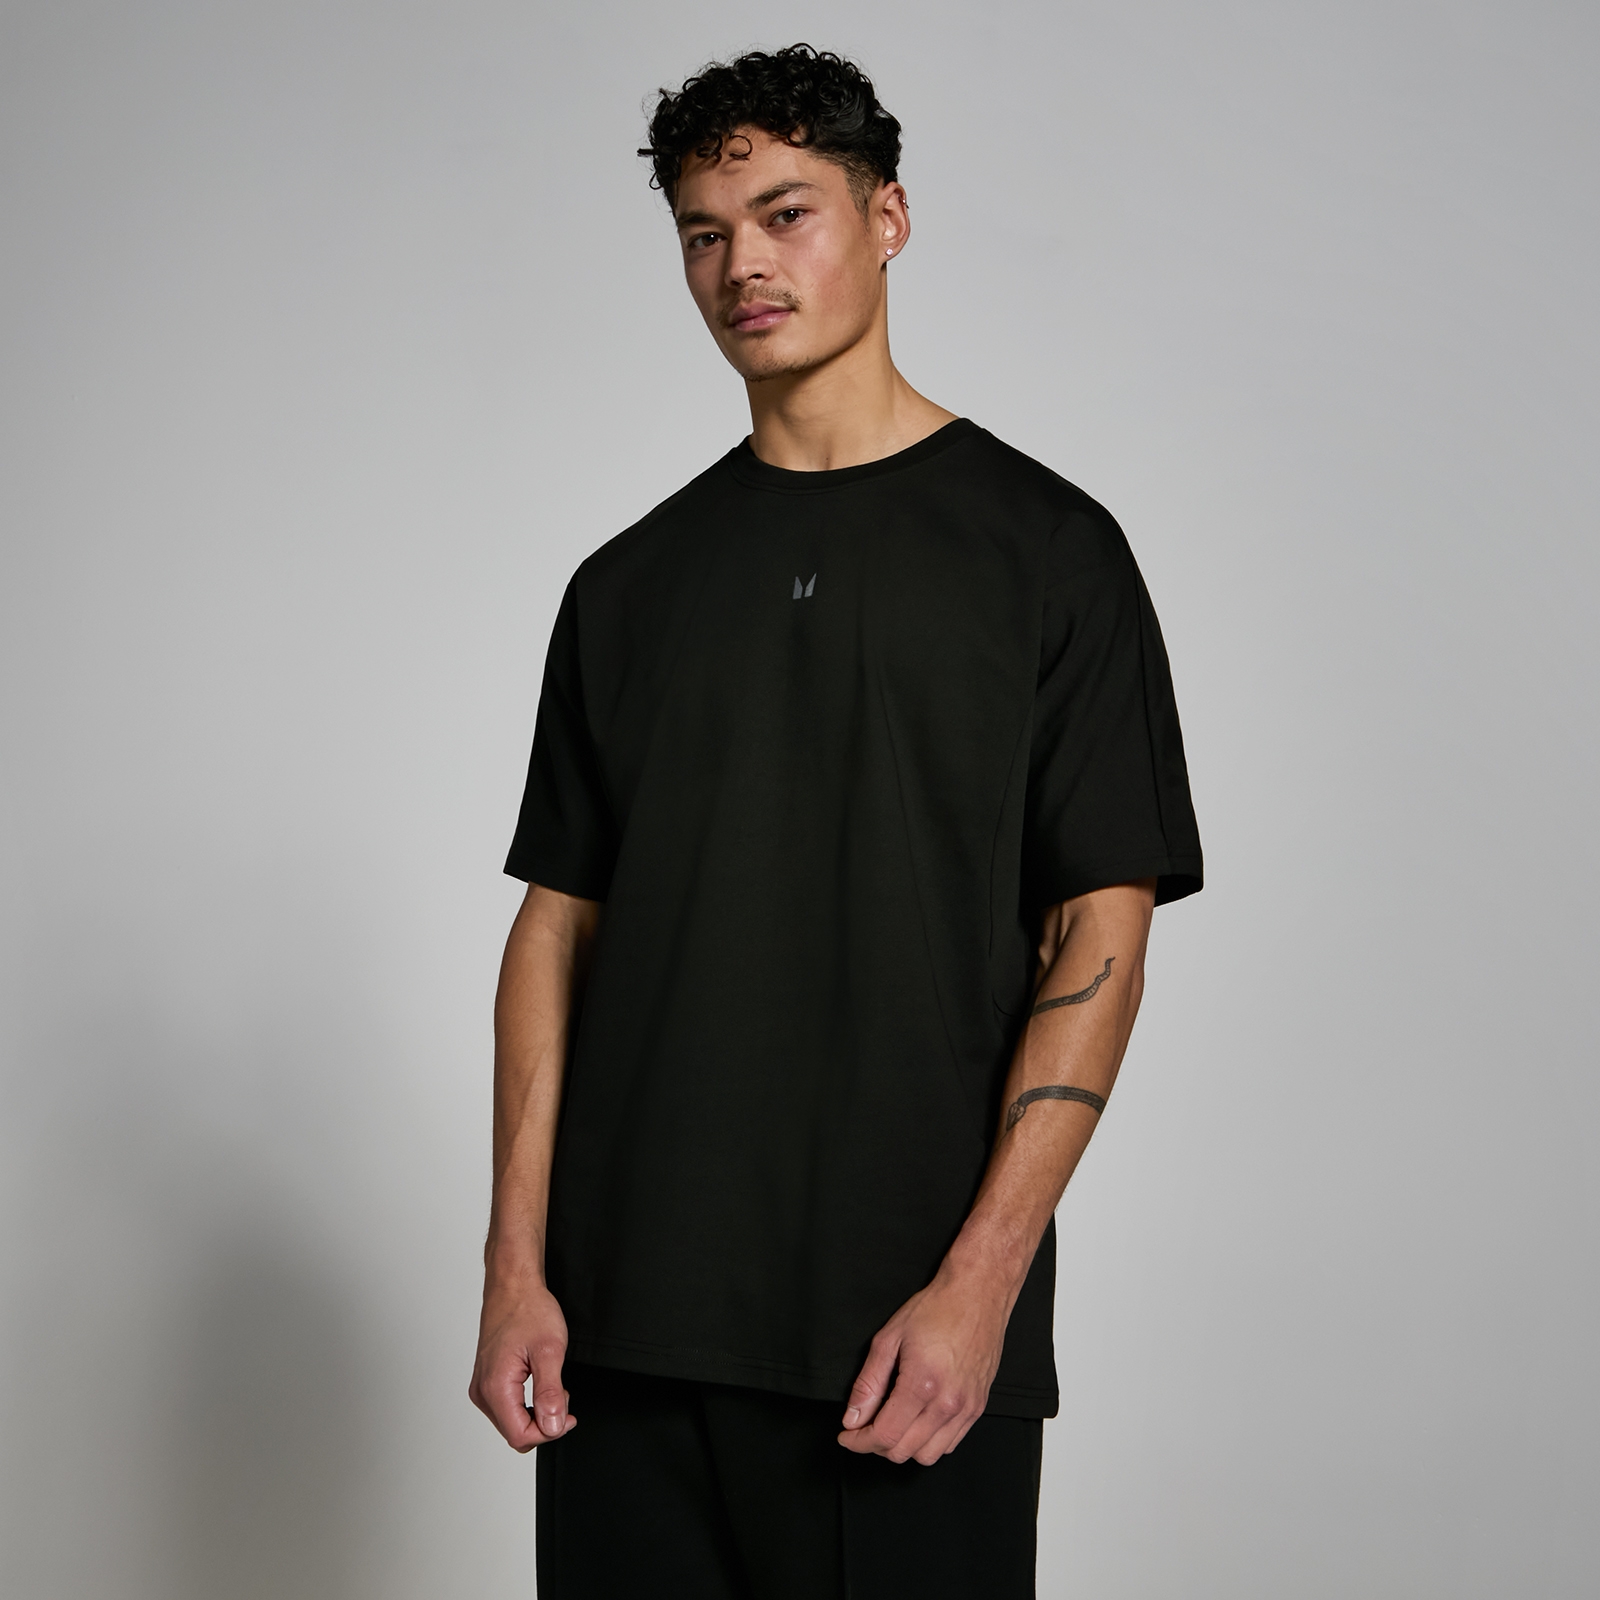 MP Мъжка тениска с нестандартен размер от плътна материя Lifestyle – черна - XS